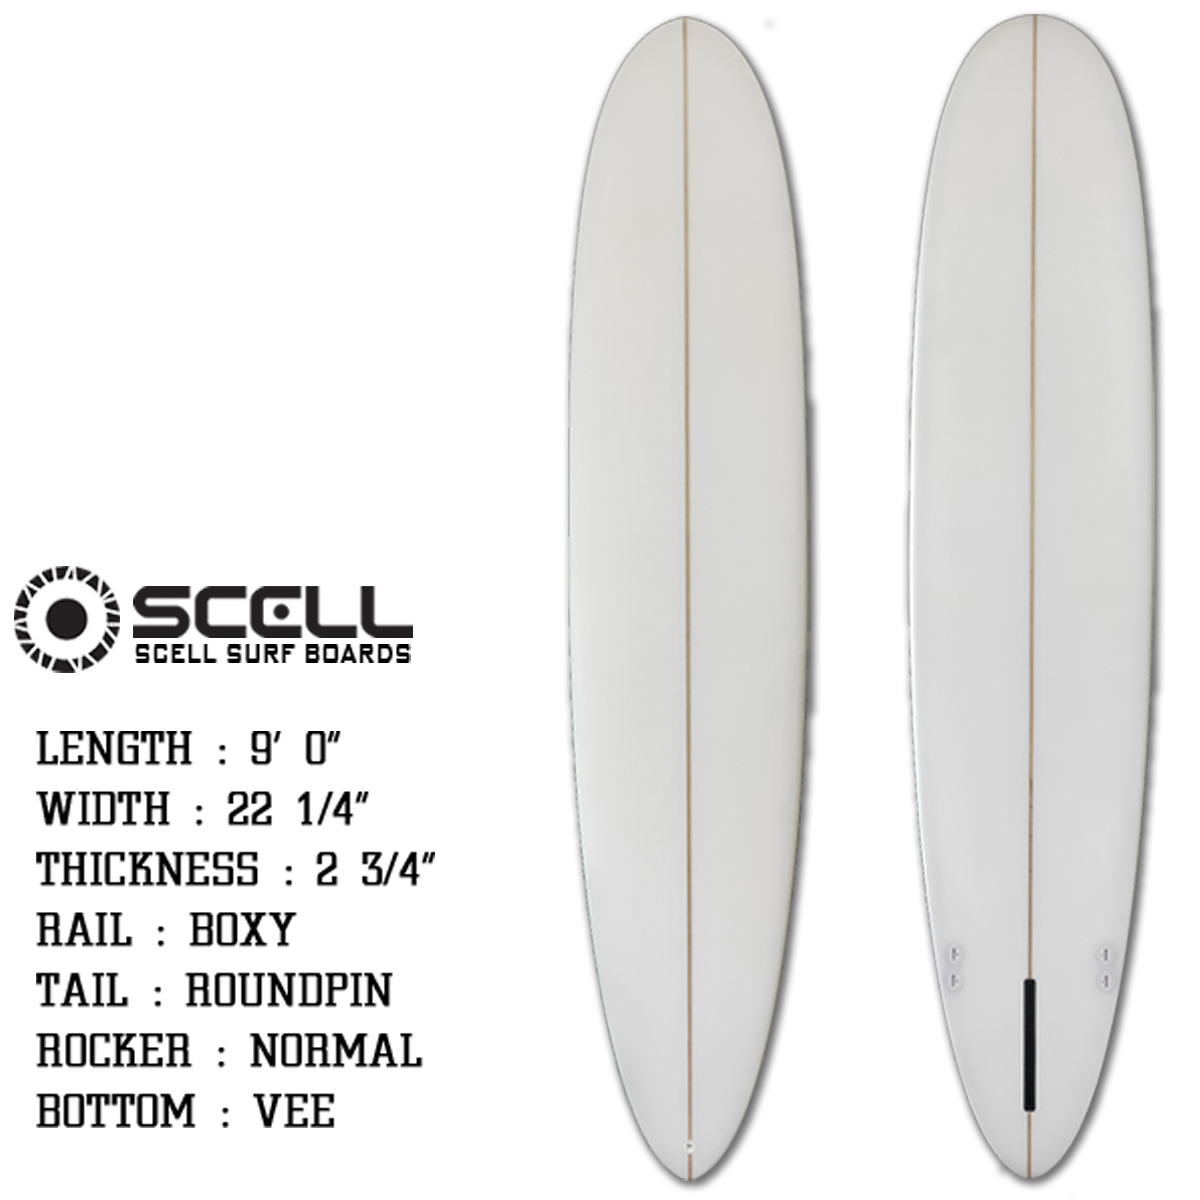 完全送料無料 BULLS-SURF送料無料 SCELL セル サーフィン サーフボード